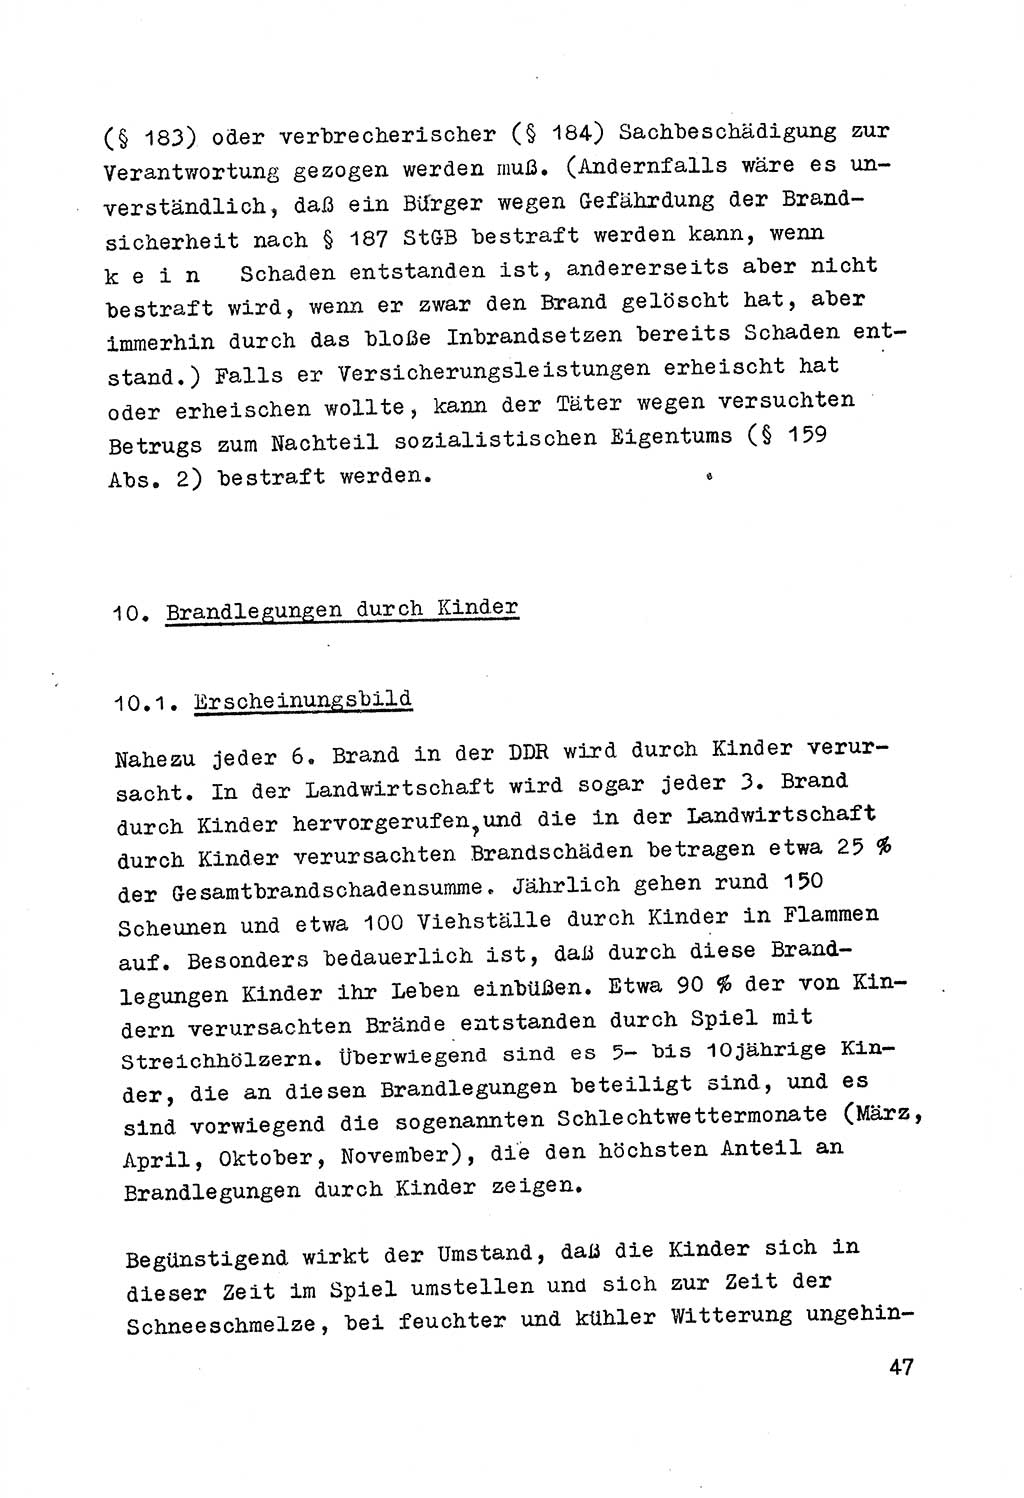 Strafrecht der DDR (Deutsche Demokratische Republik), Besonderer Teil, Lehrmaterial, Heft 7 1970, Seite 47 (Strafr. DDR BT Lehrmat. H. 7 1970, S. 47)